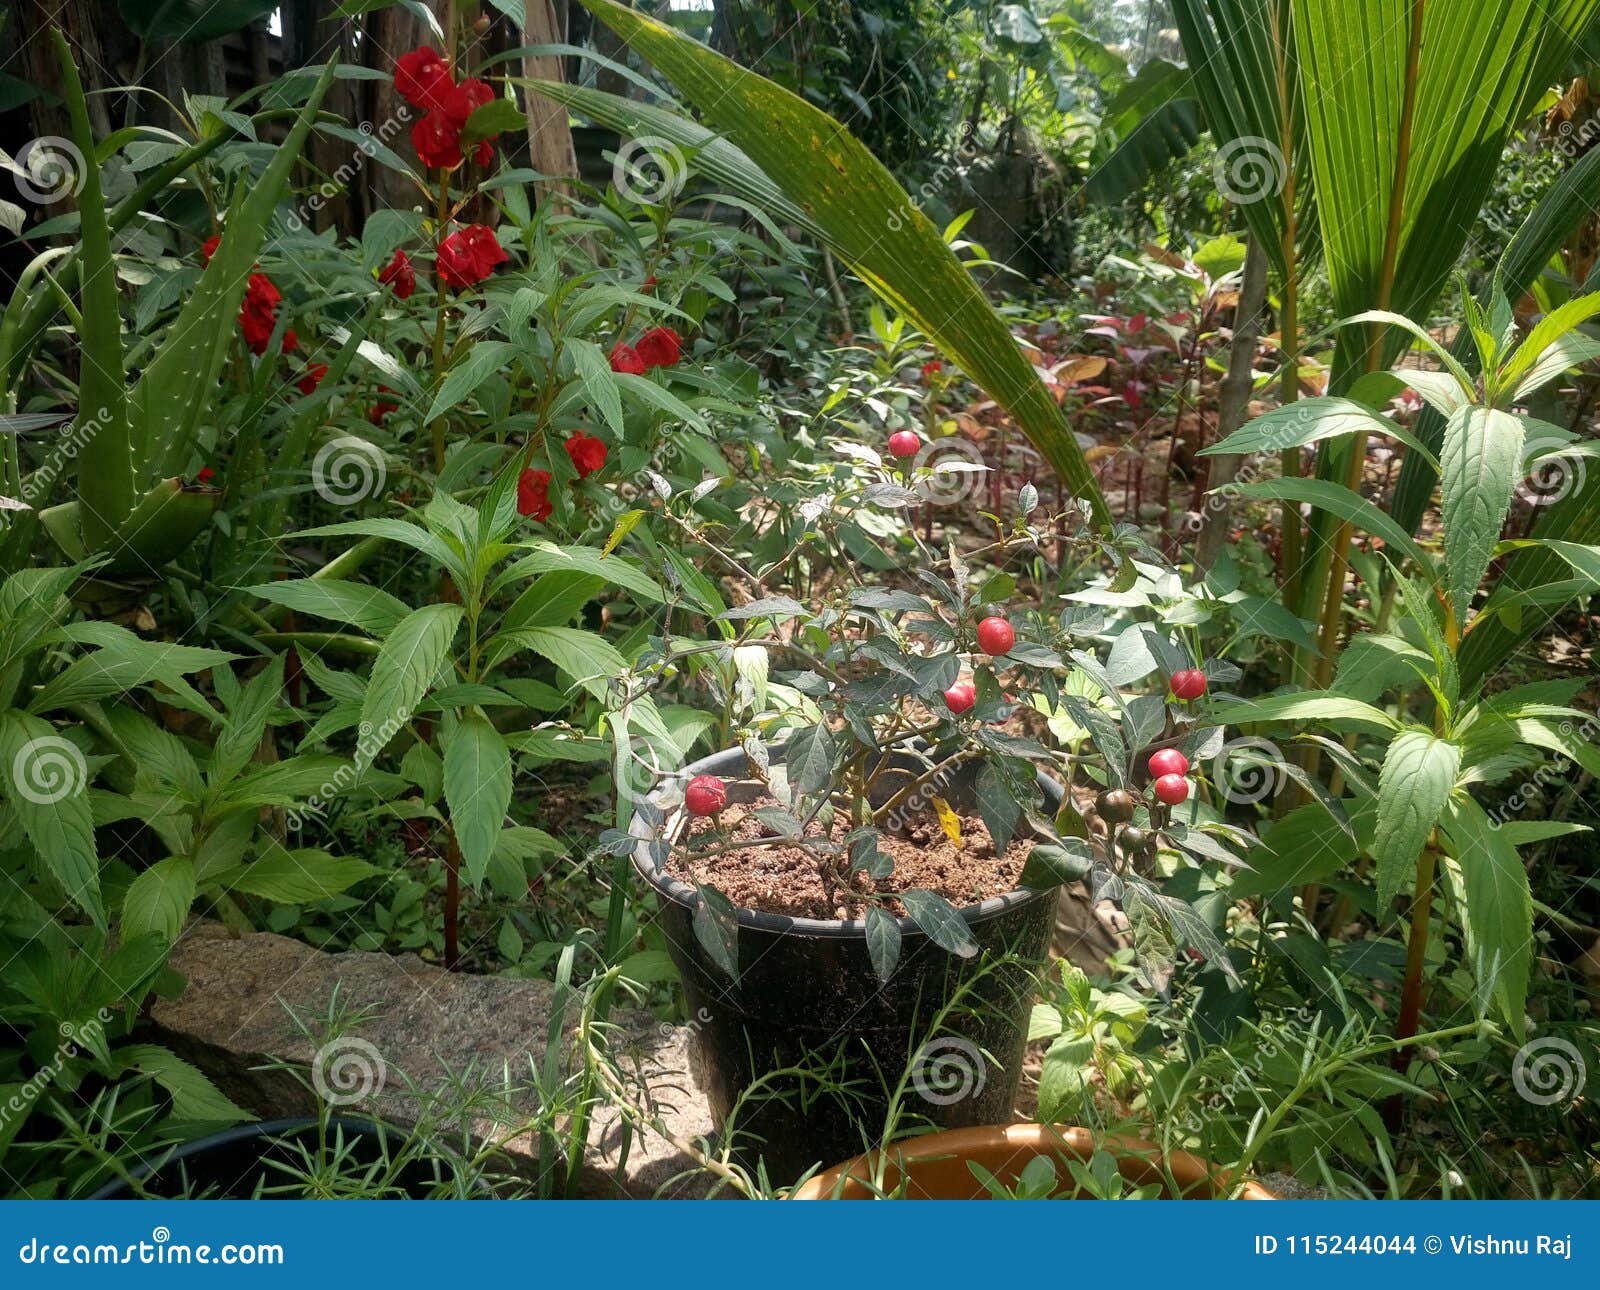 Hem- trädgård av växter & blomman. Röd blomma & liten röd chili i hemlantgården på borggården